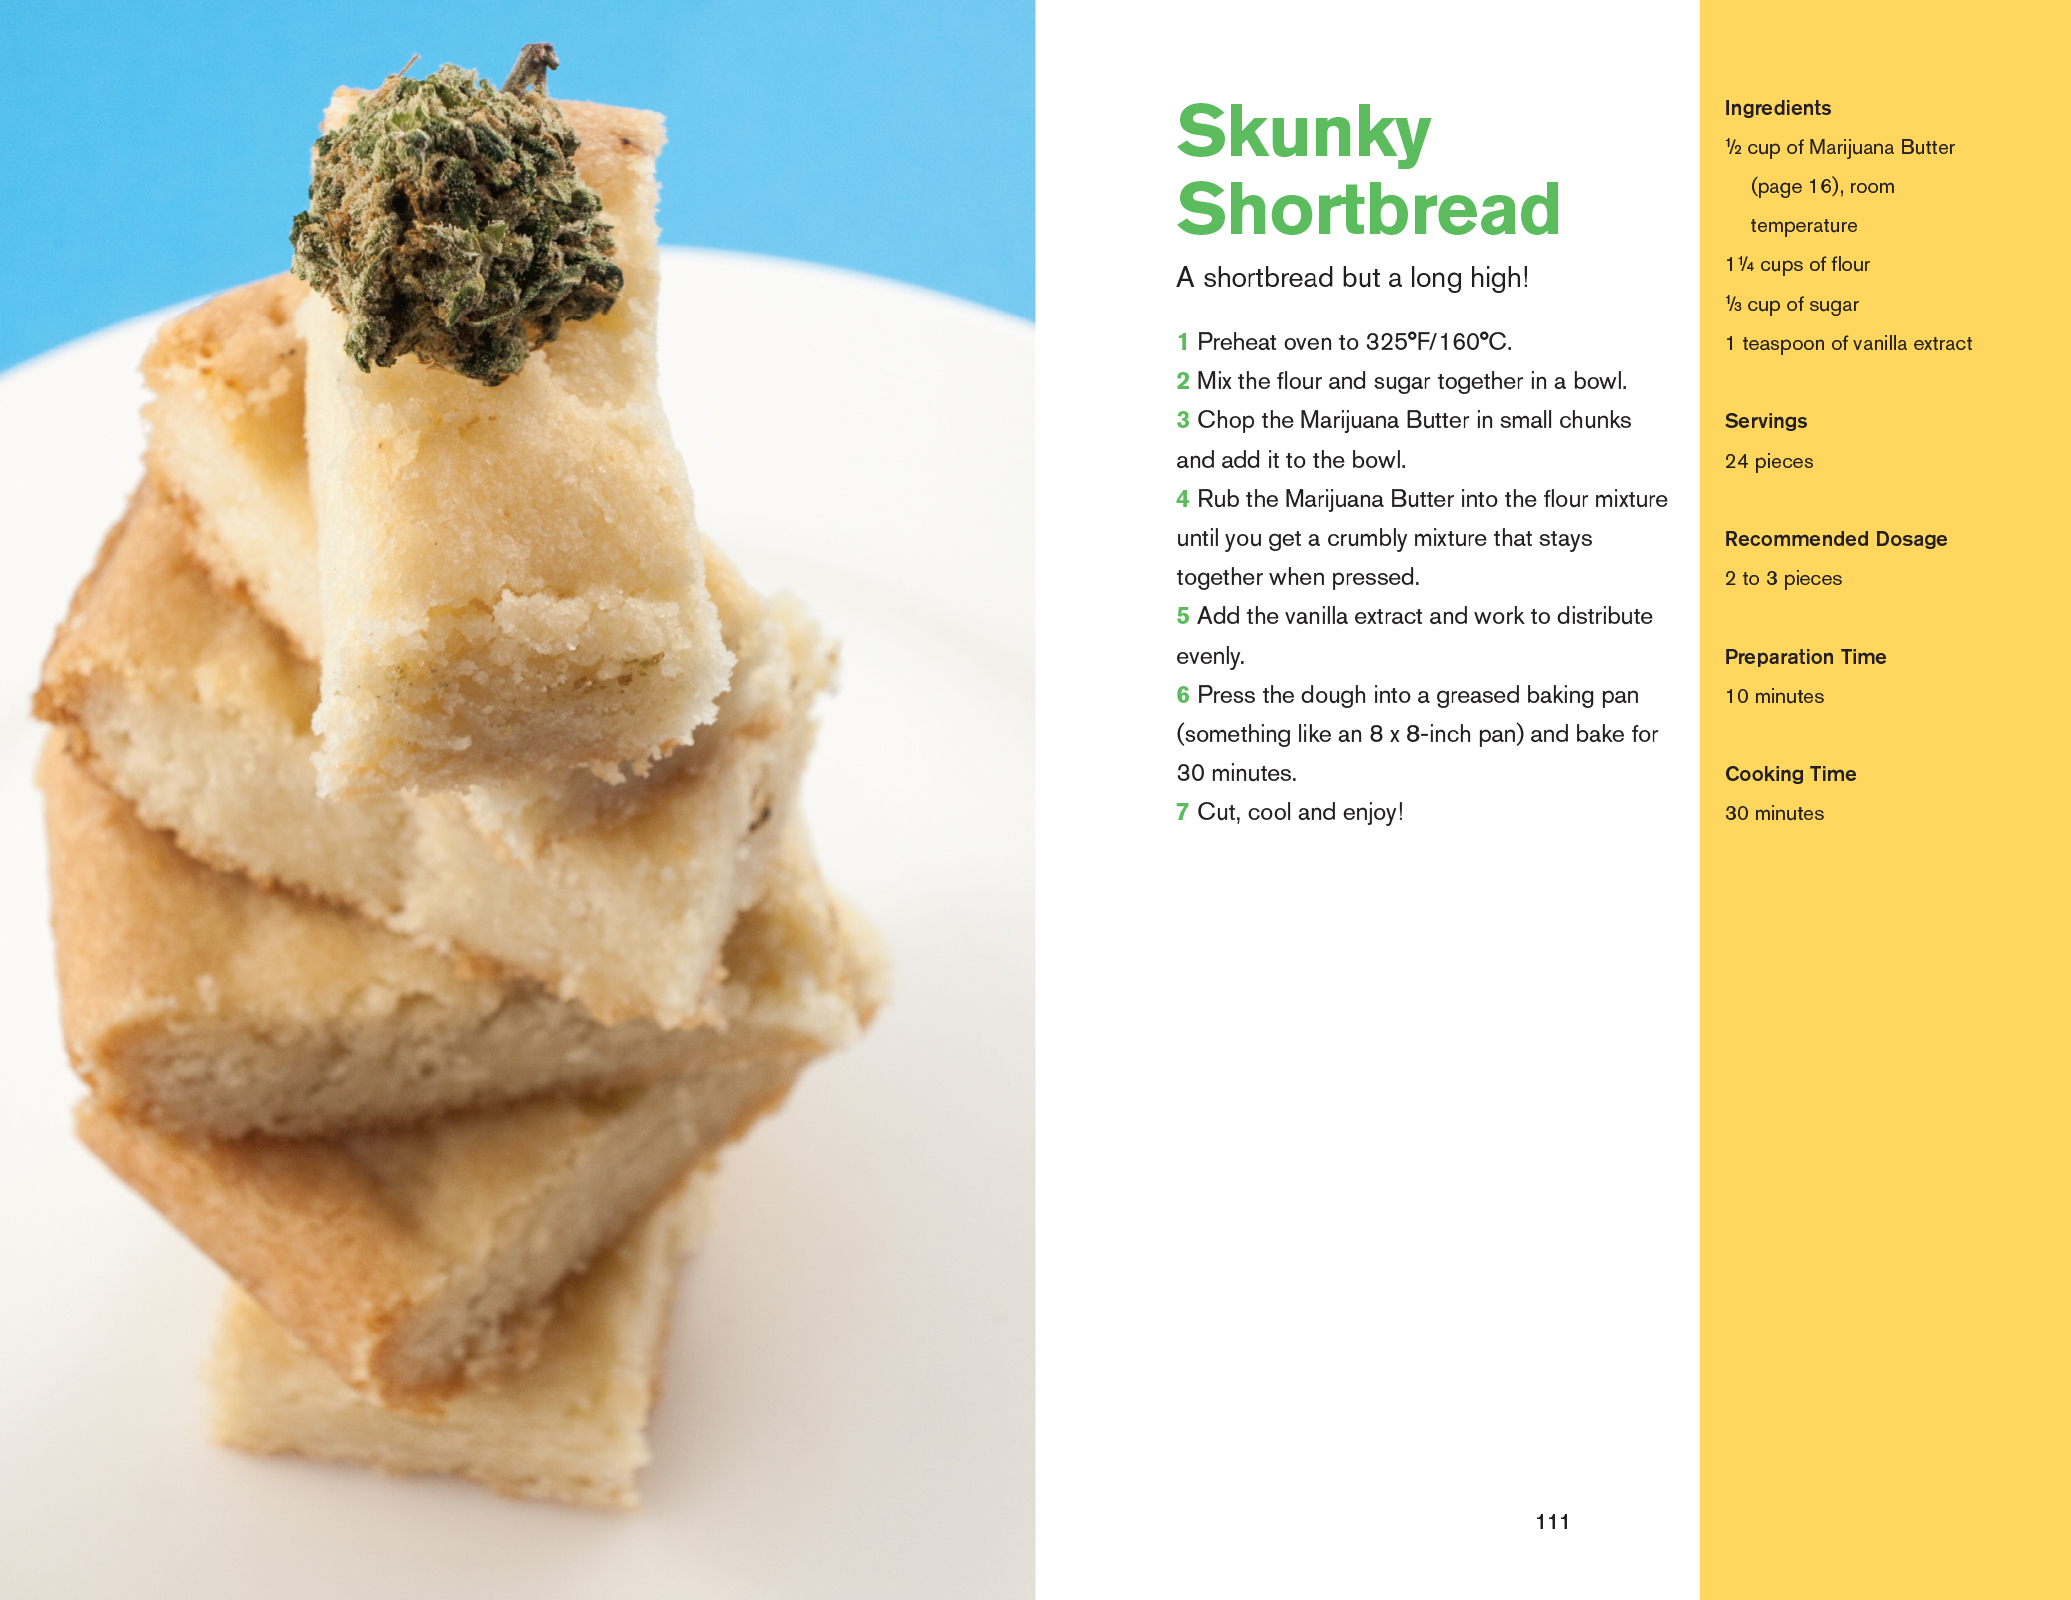 The Marijuana Chef Cookbook